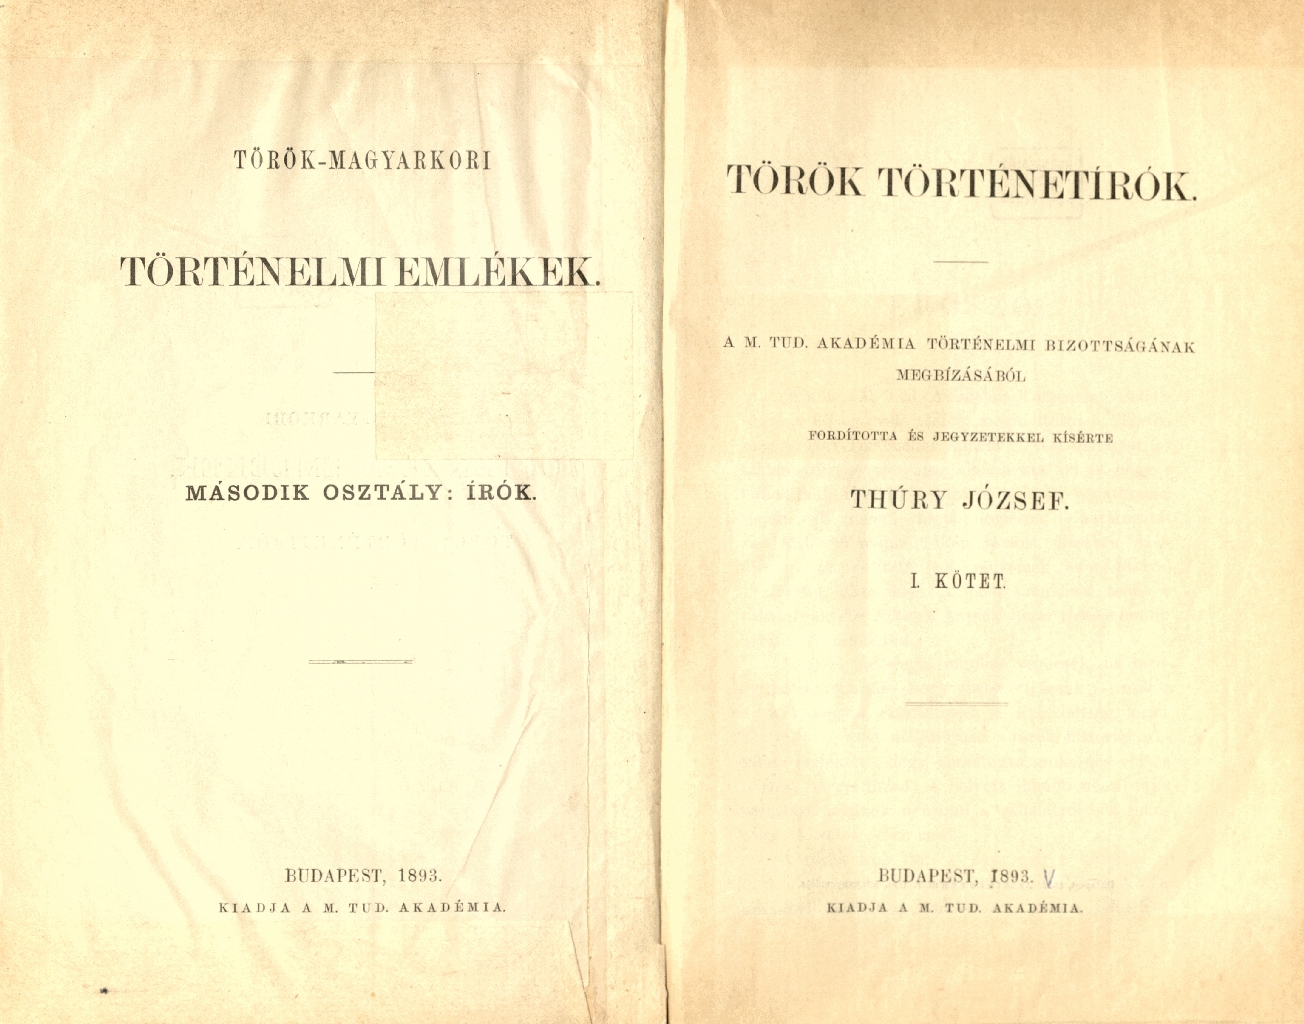 Török történetírók, 1893